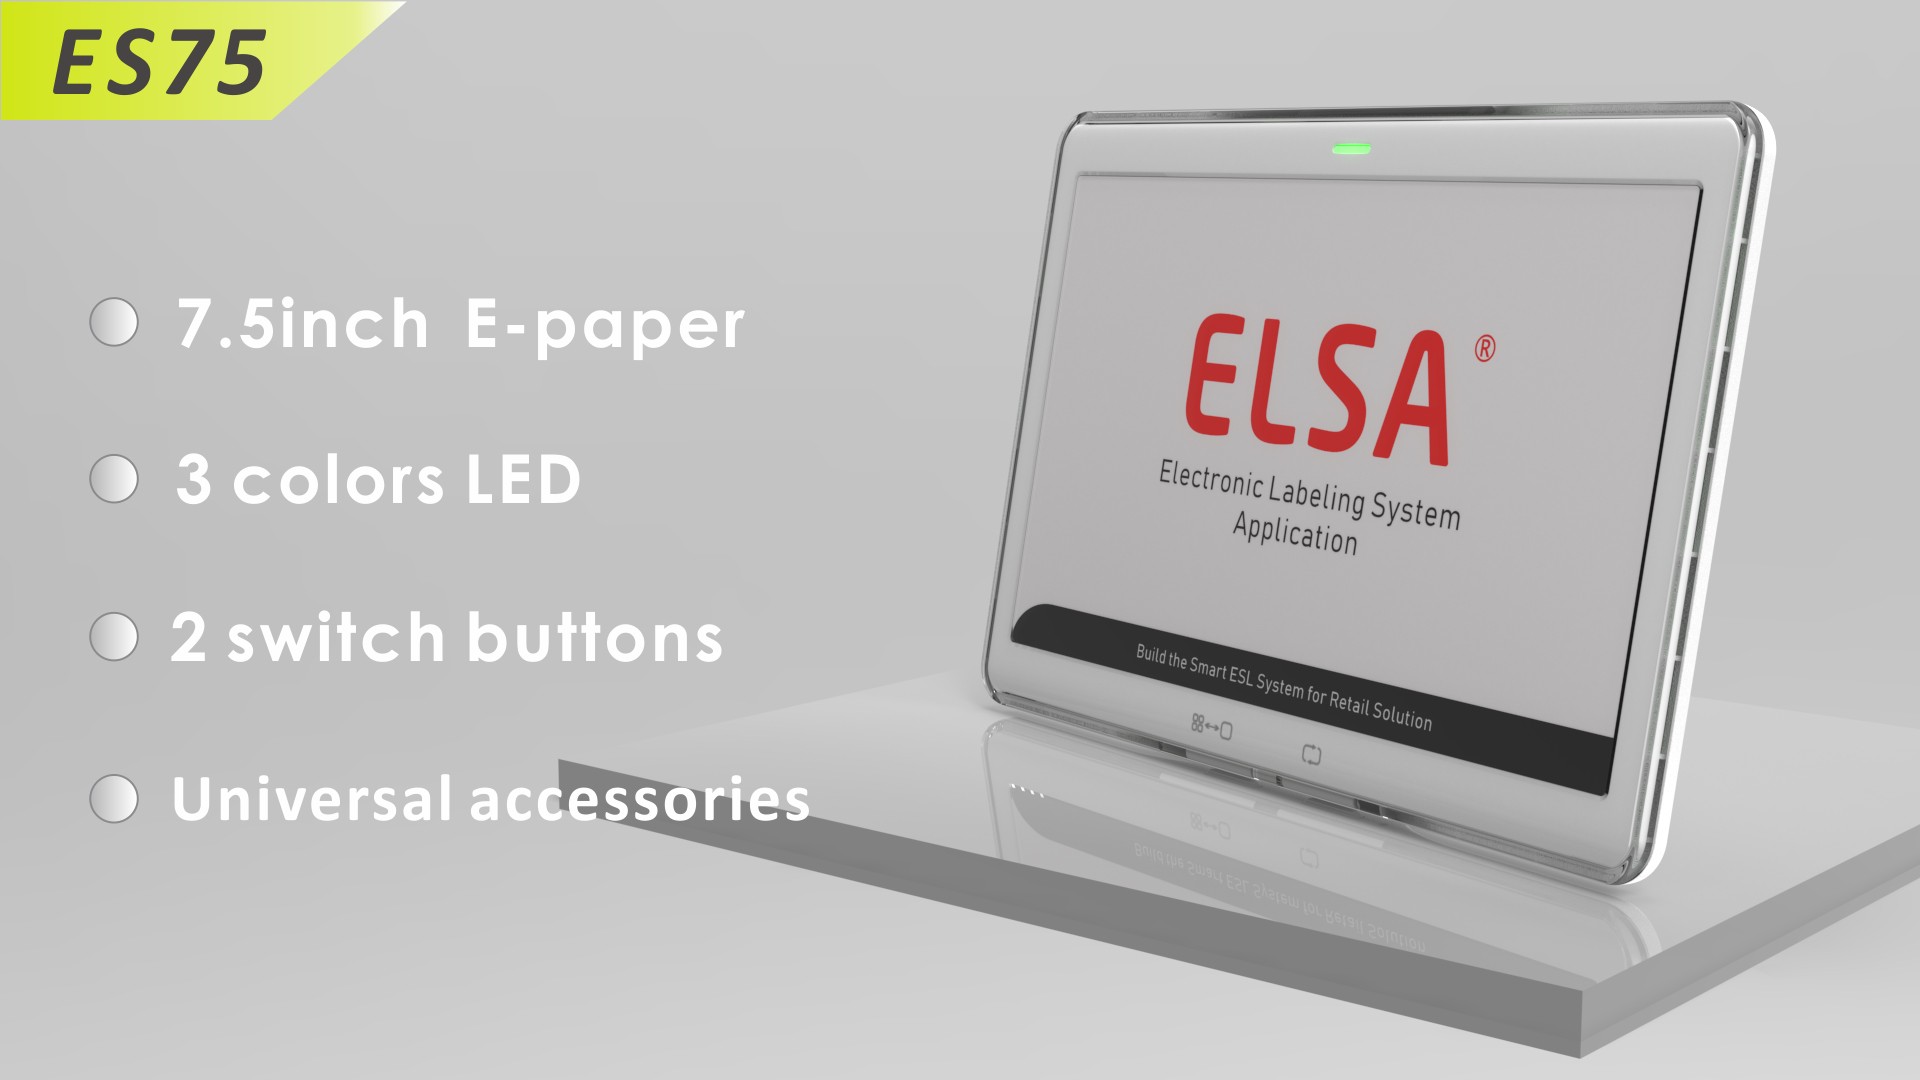 ELSA Smart e-Label